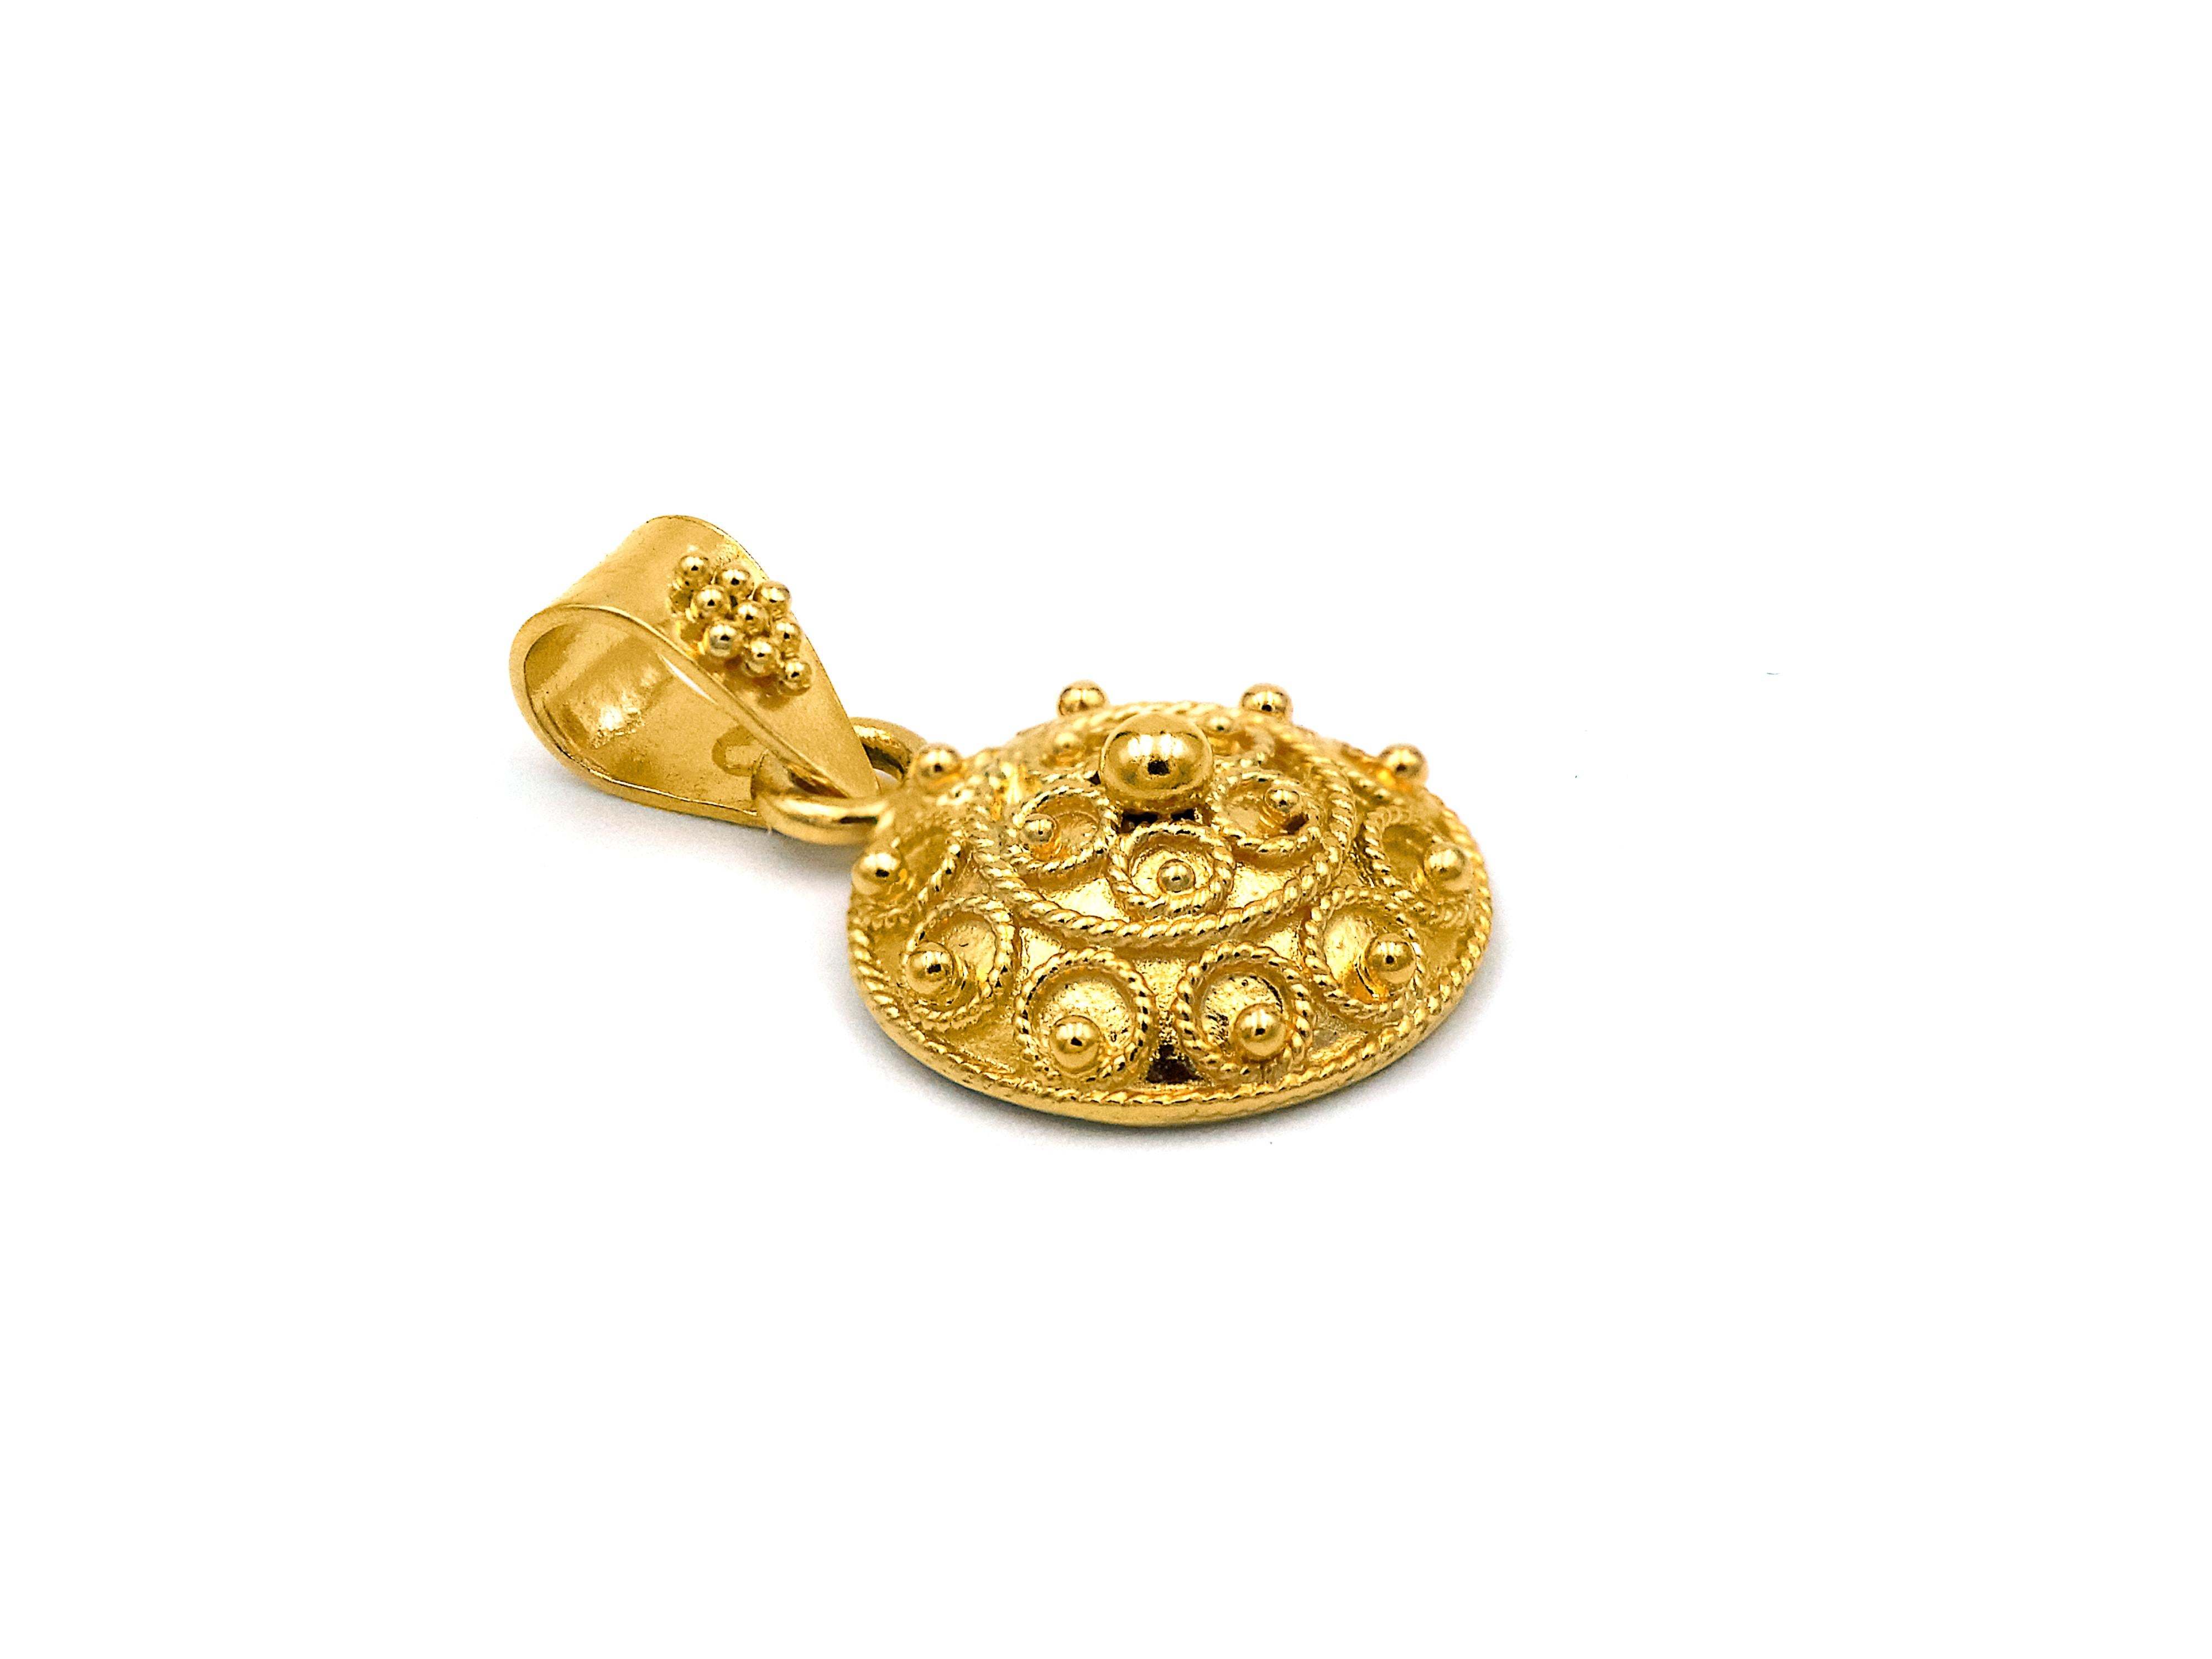 Le pendentif Bocola est serti dans de l'or jaune 22k. Le motif est créé avec des cercles de filigrane et des granulations de différentes tailles tout autour. Le cerceau est simple et épuré, de sorte que l'accent reste sur le pendentif.